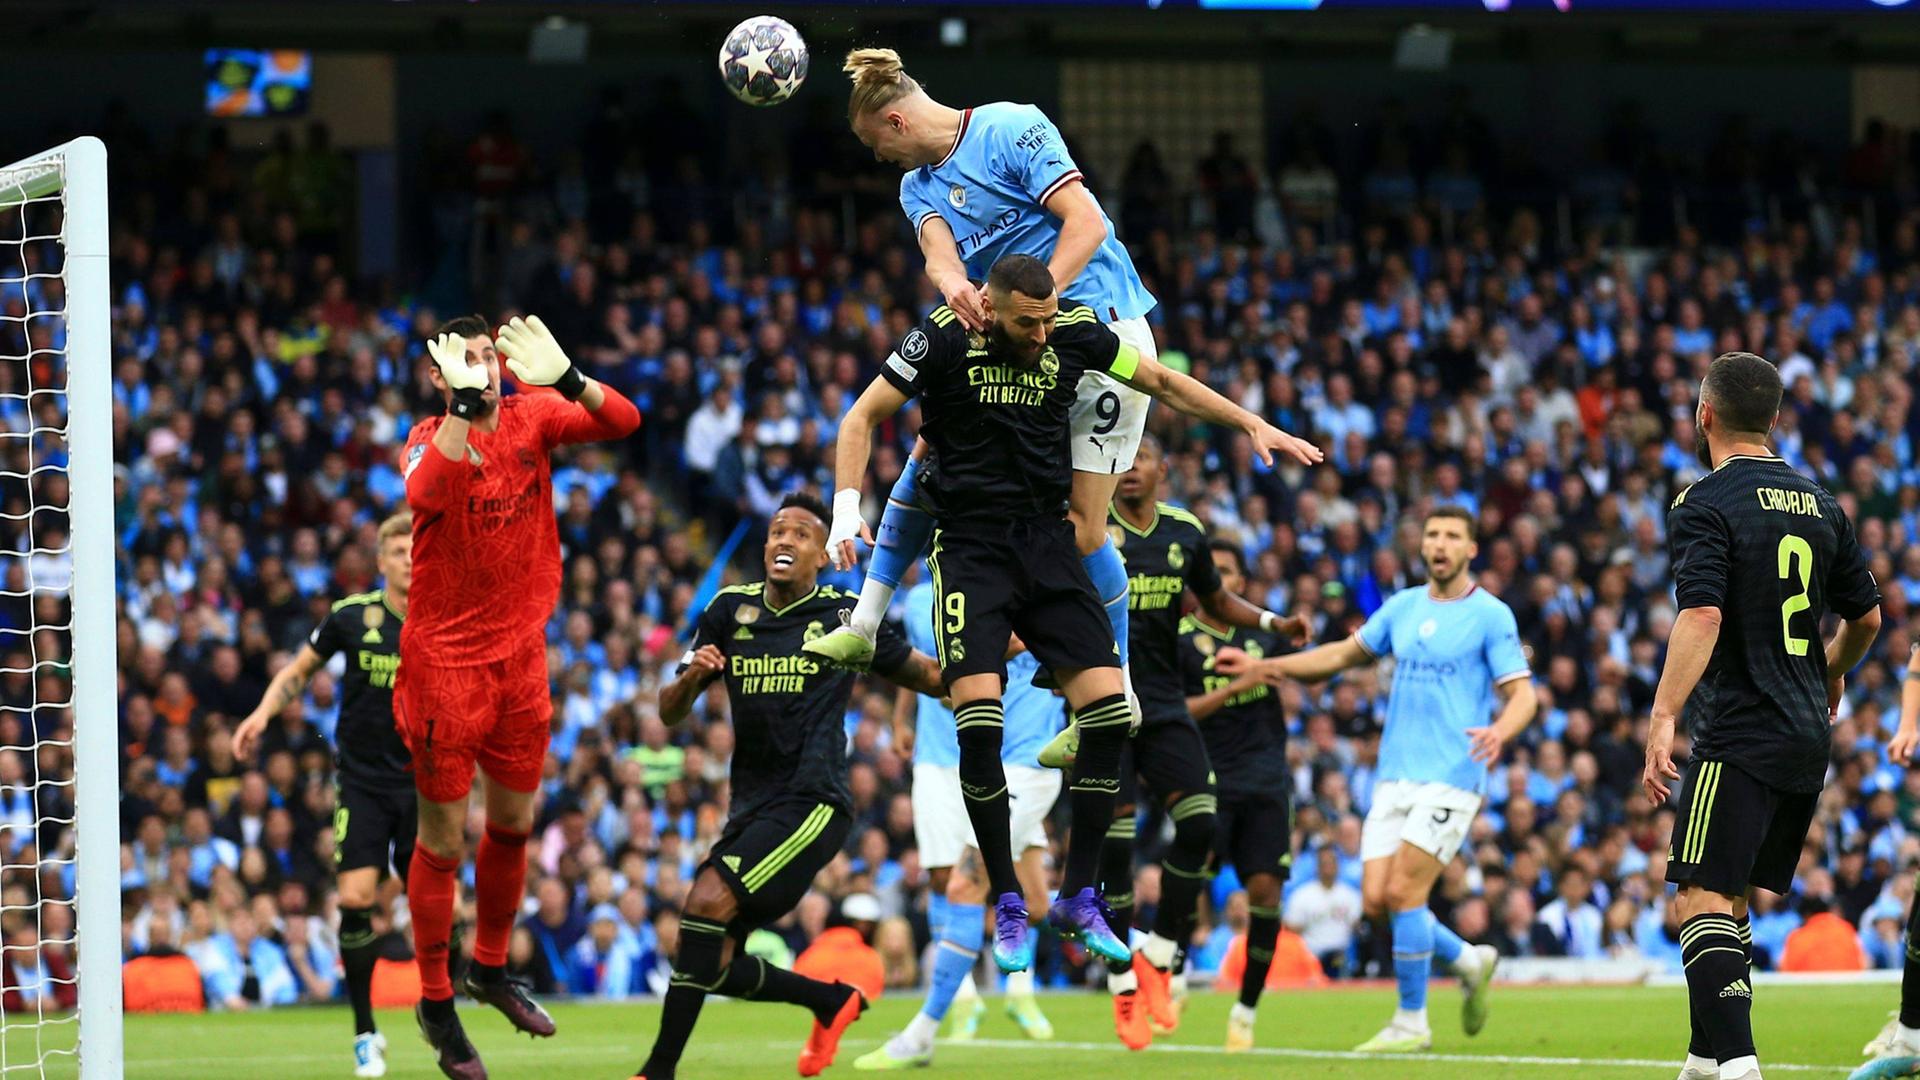 Das Foto zeigt Erling Haaland von Manchester City beim Kopfball.